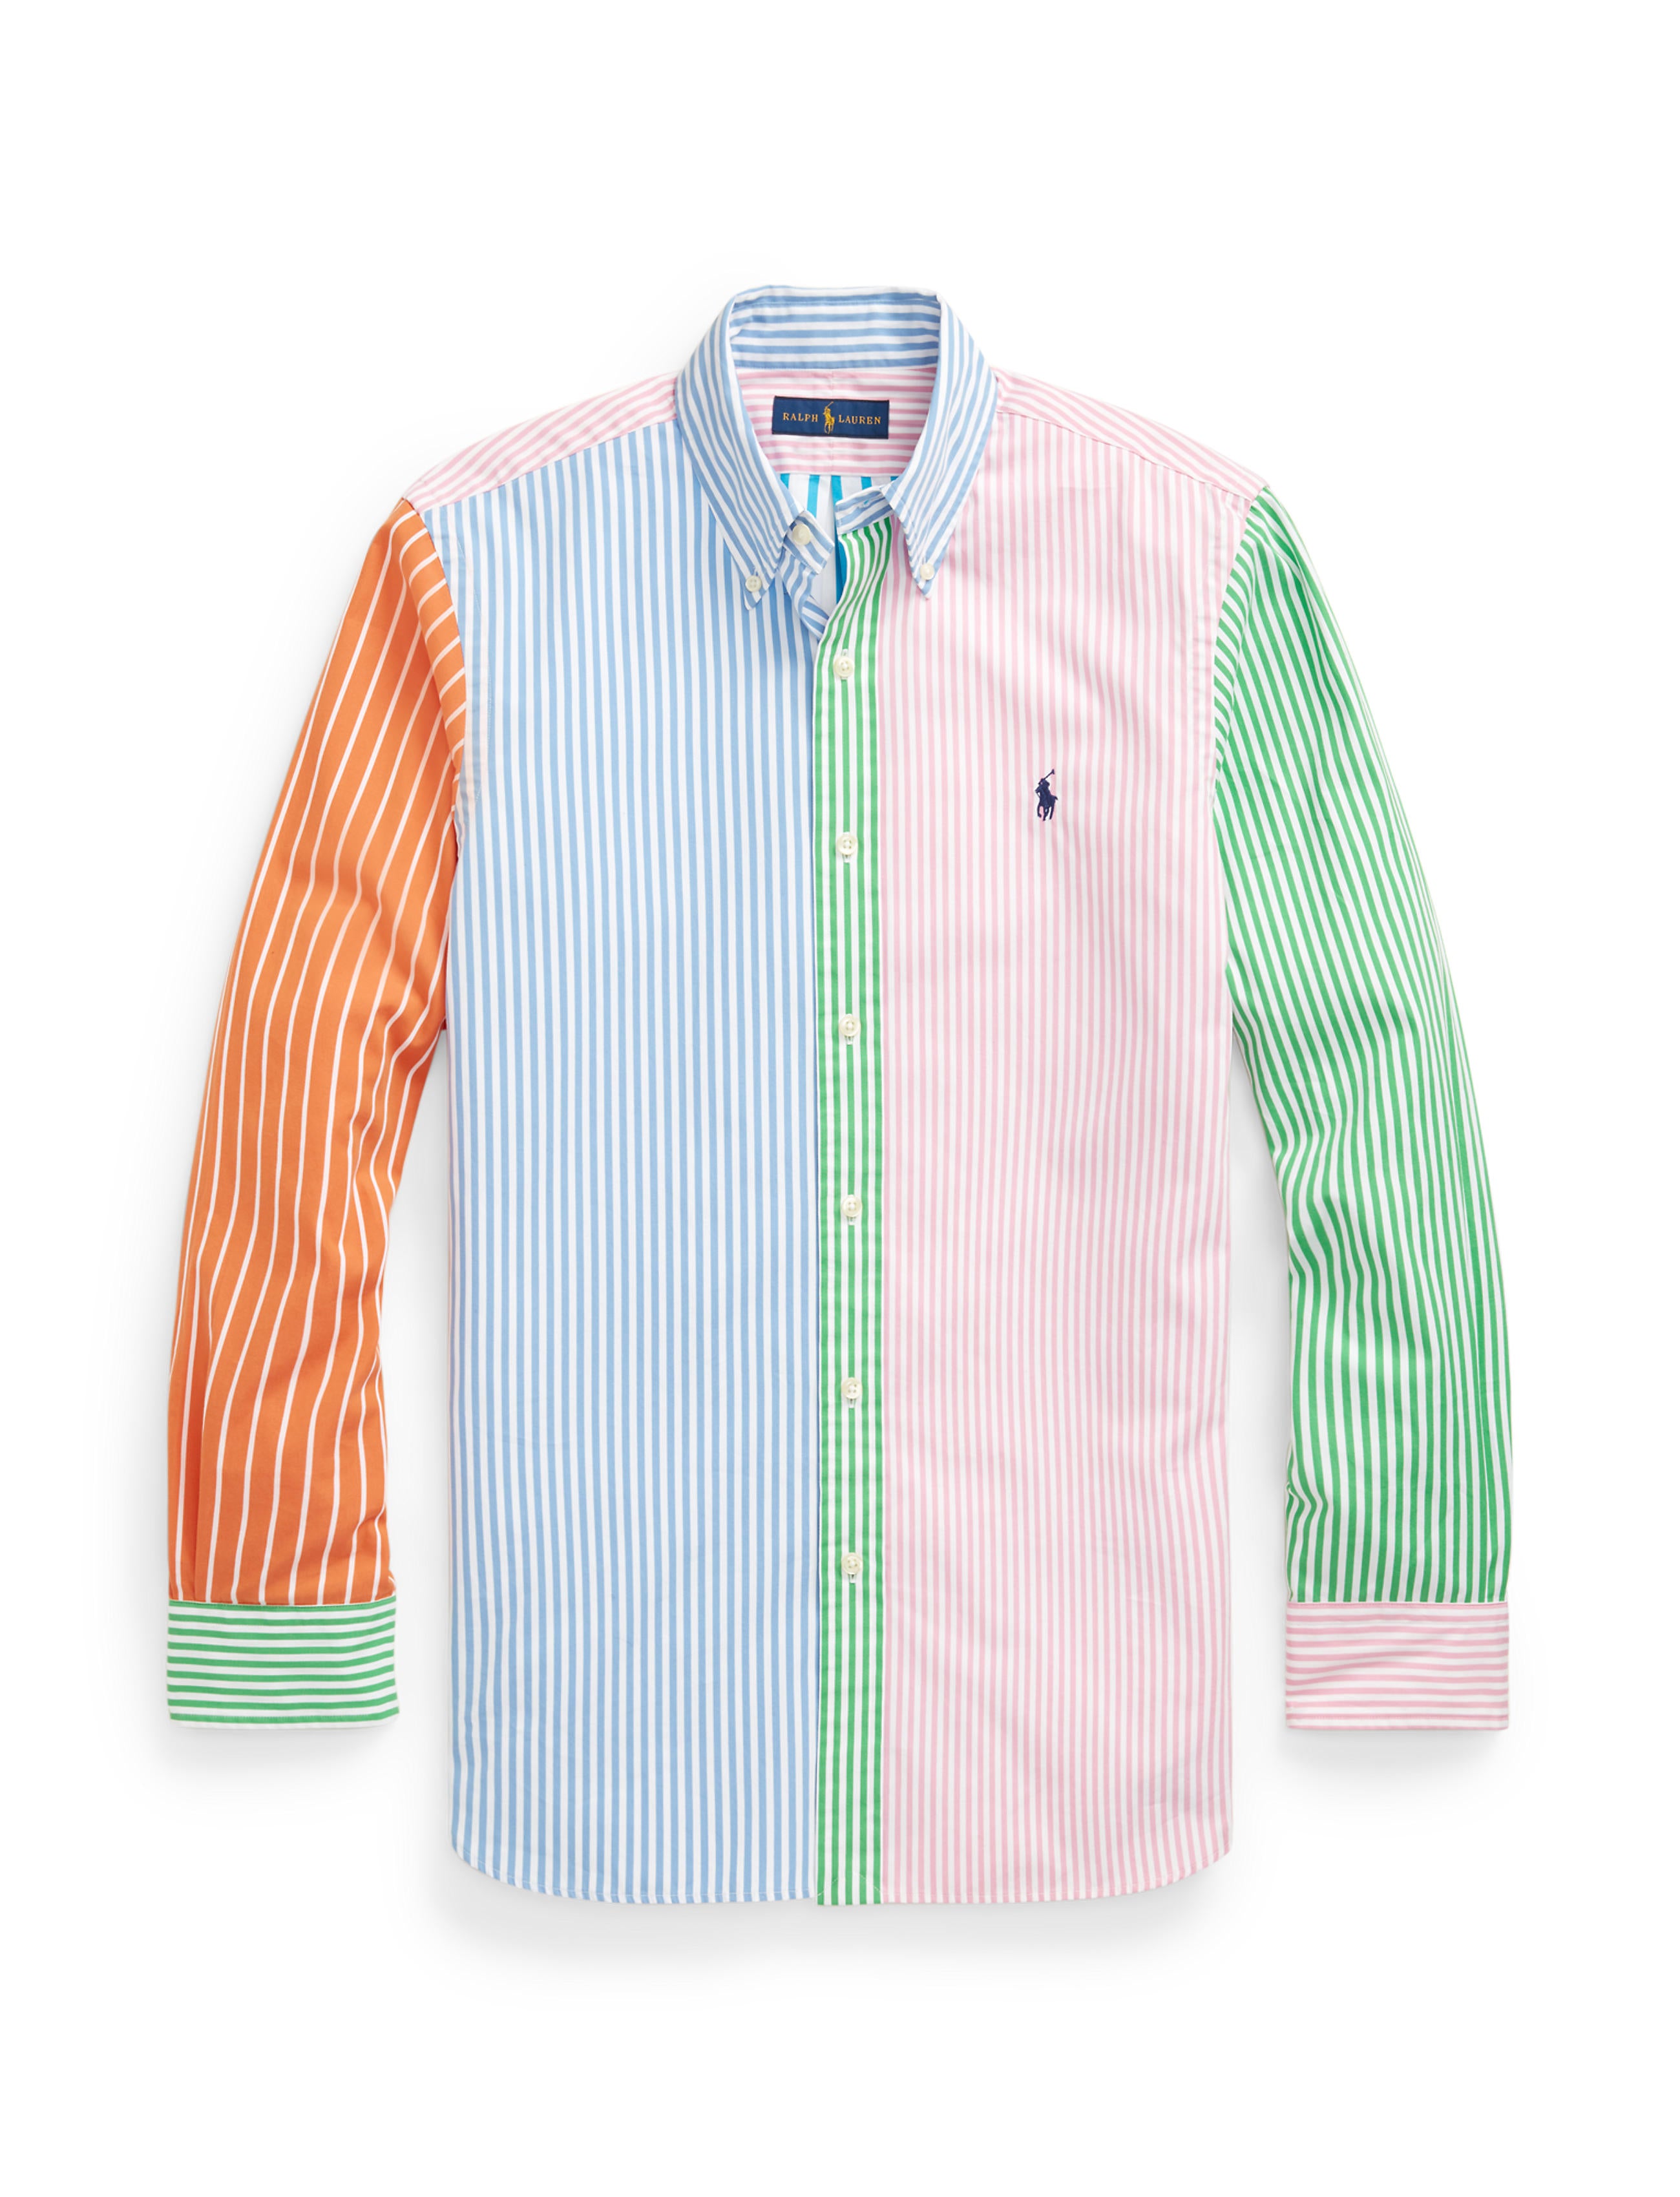 Polo Ralph Lauren Custom Fit Stripe Shirt Multicolour – routleys.com.au